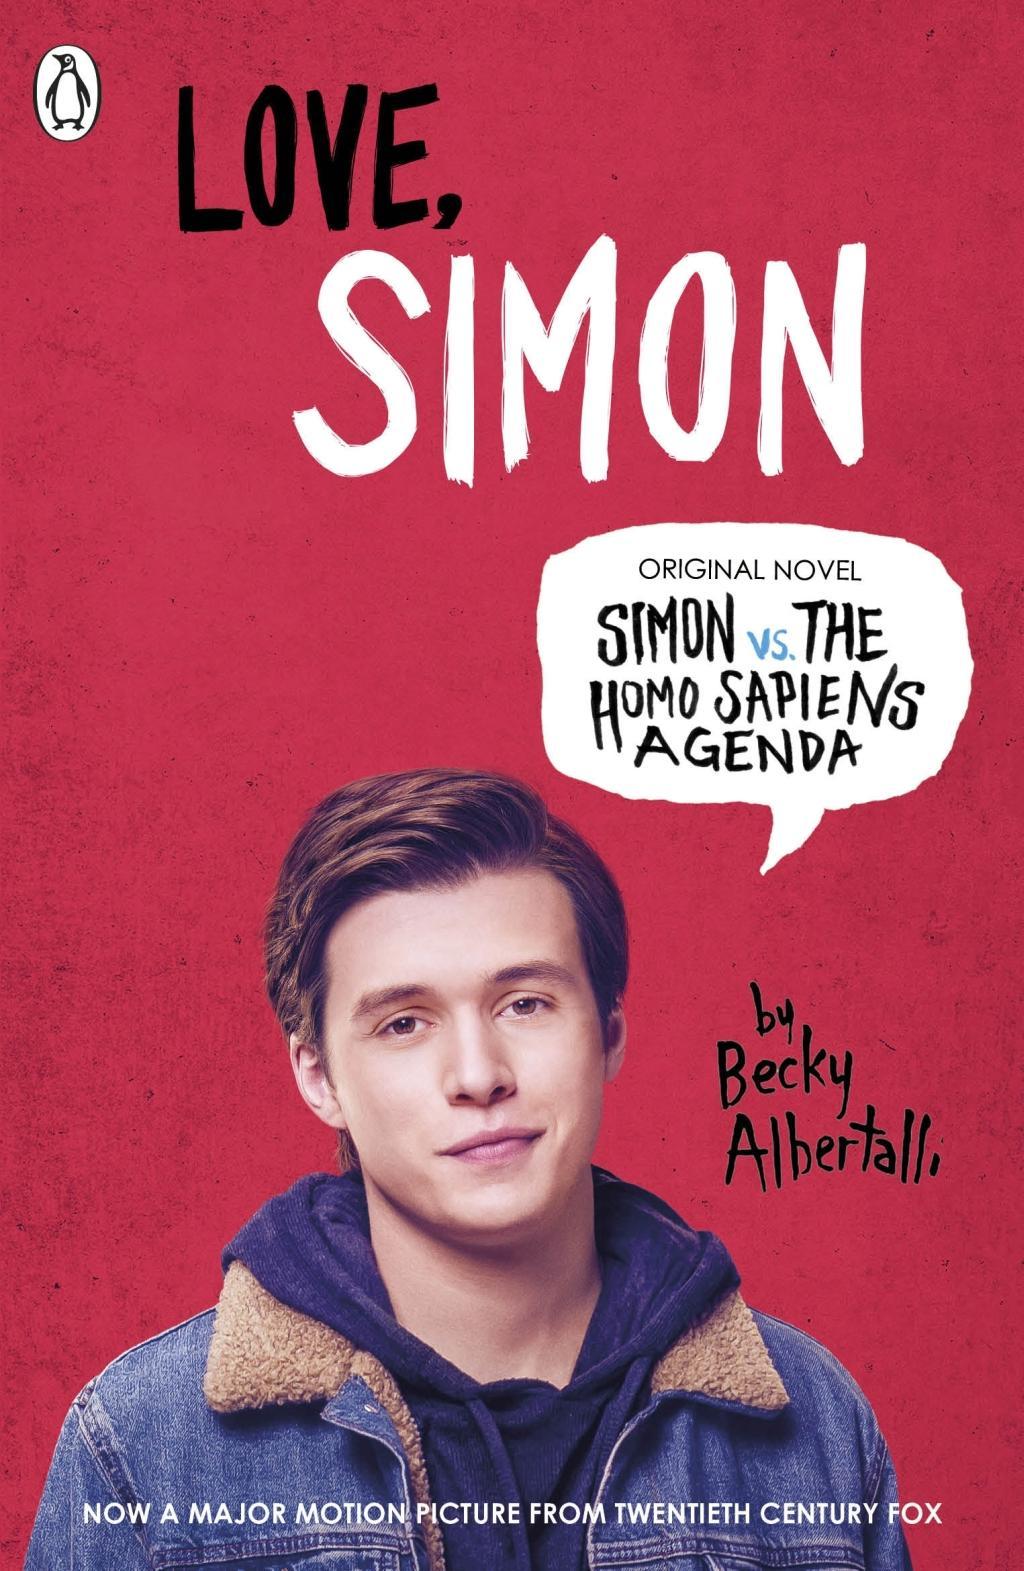 Simon vs. the Homo Sapiens Agenda. Love Simon. Film Tie-In